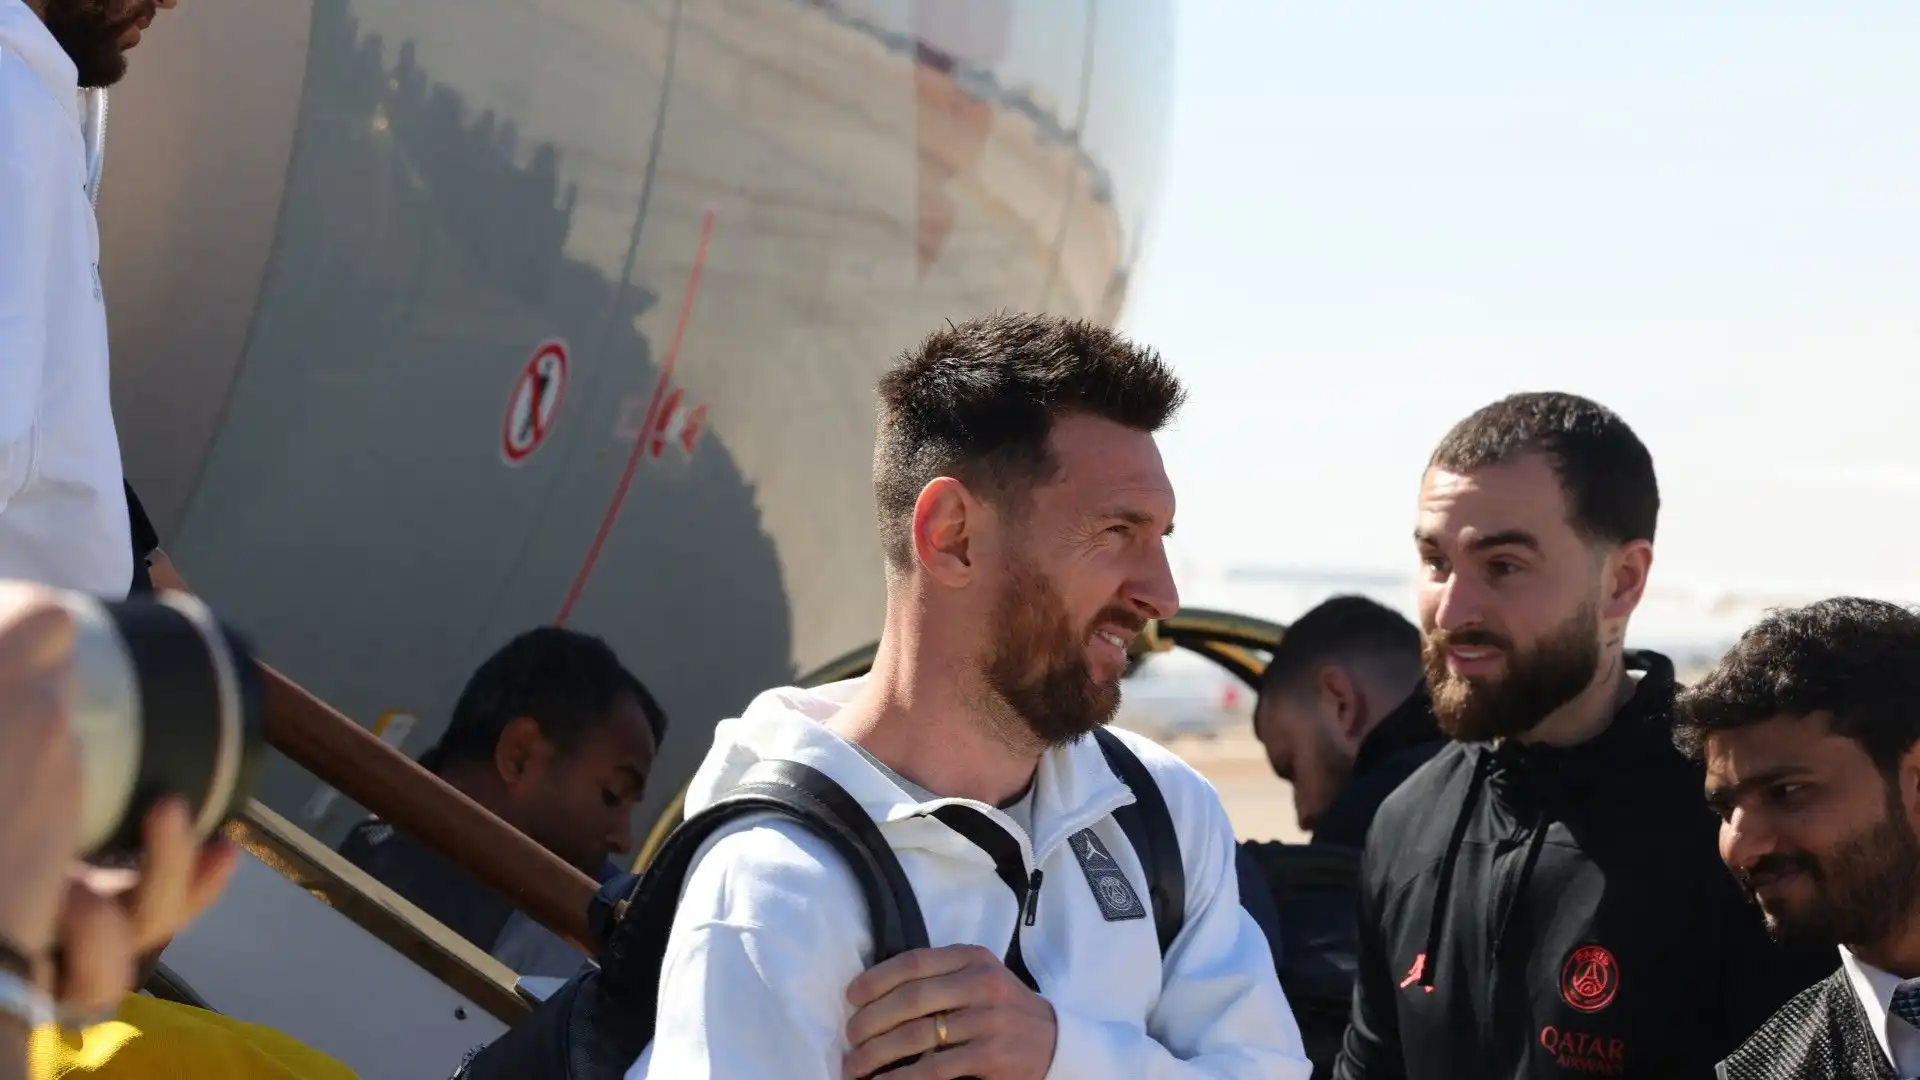 Ecco Lionel Messi che scende dall'aereo